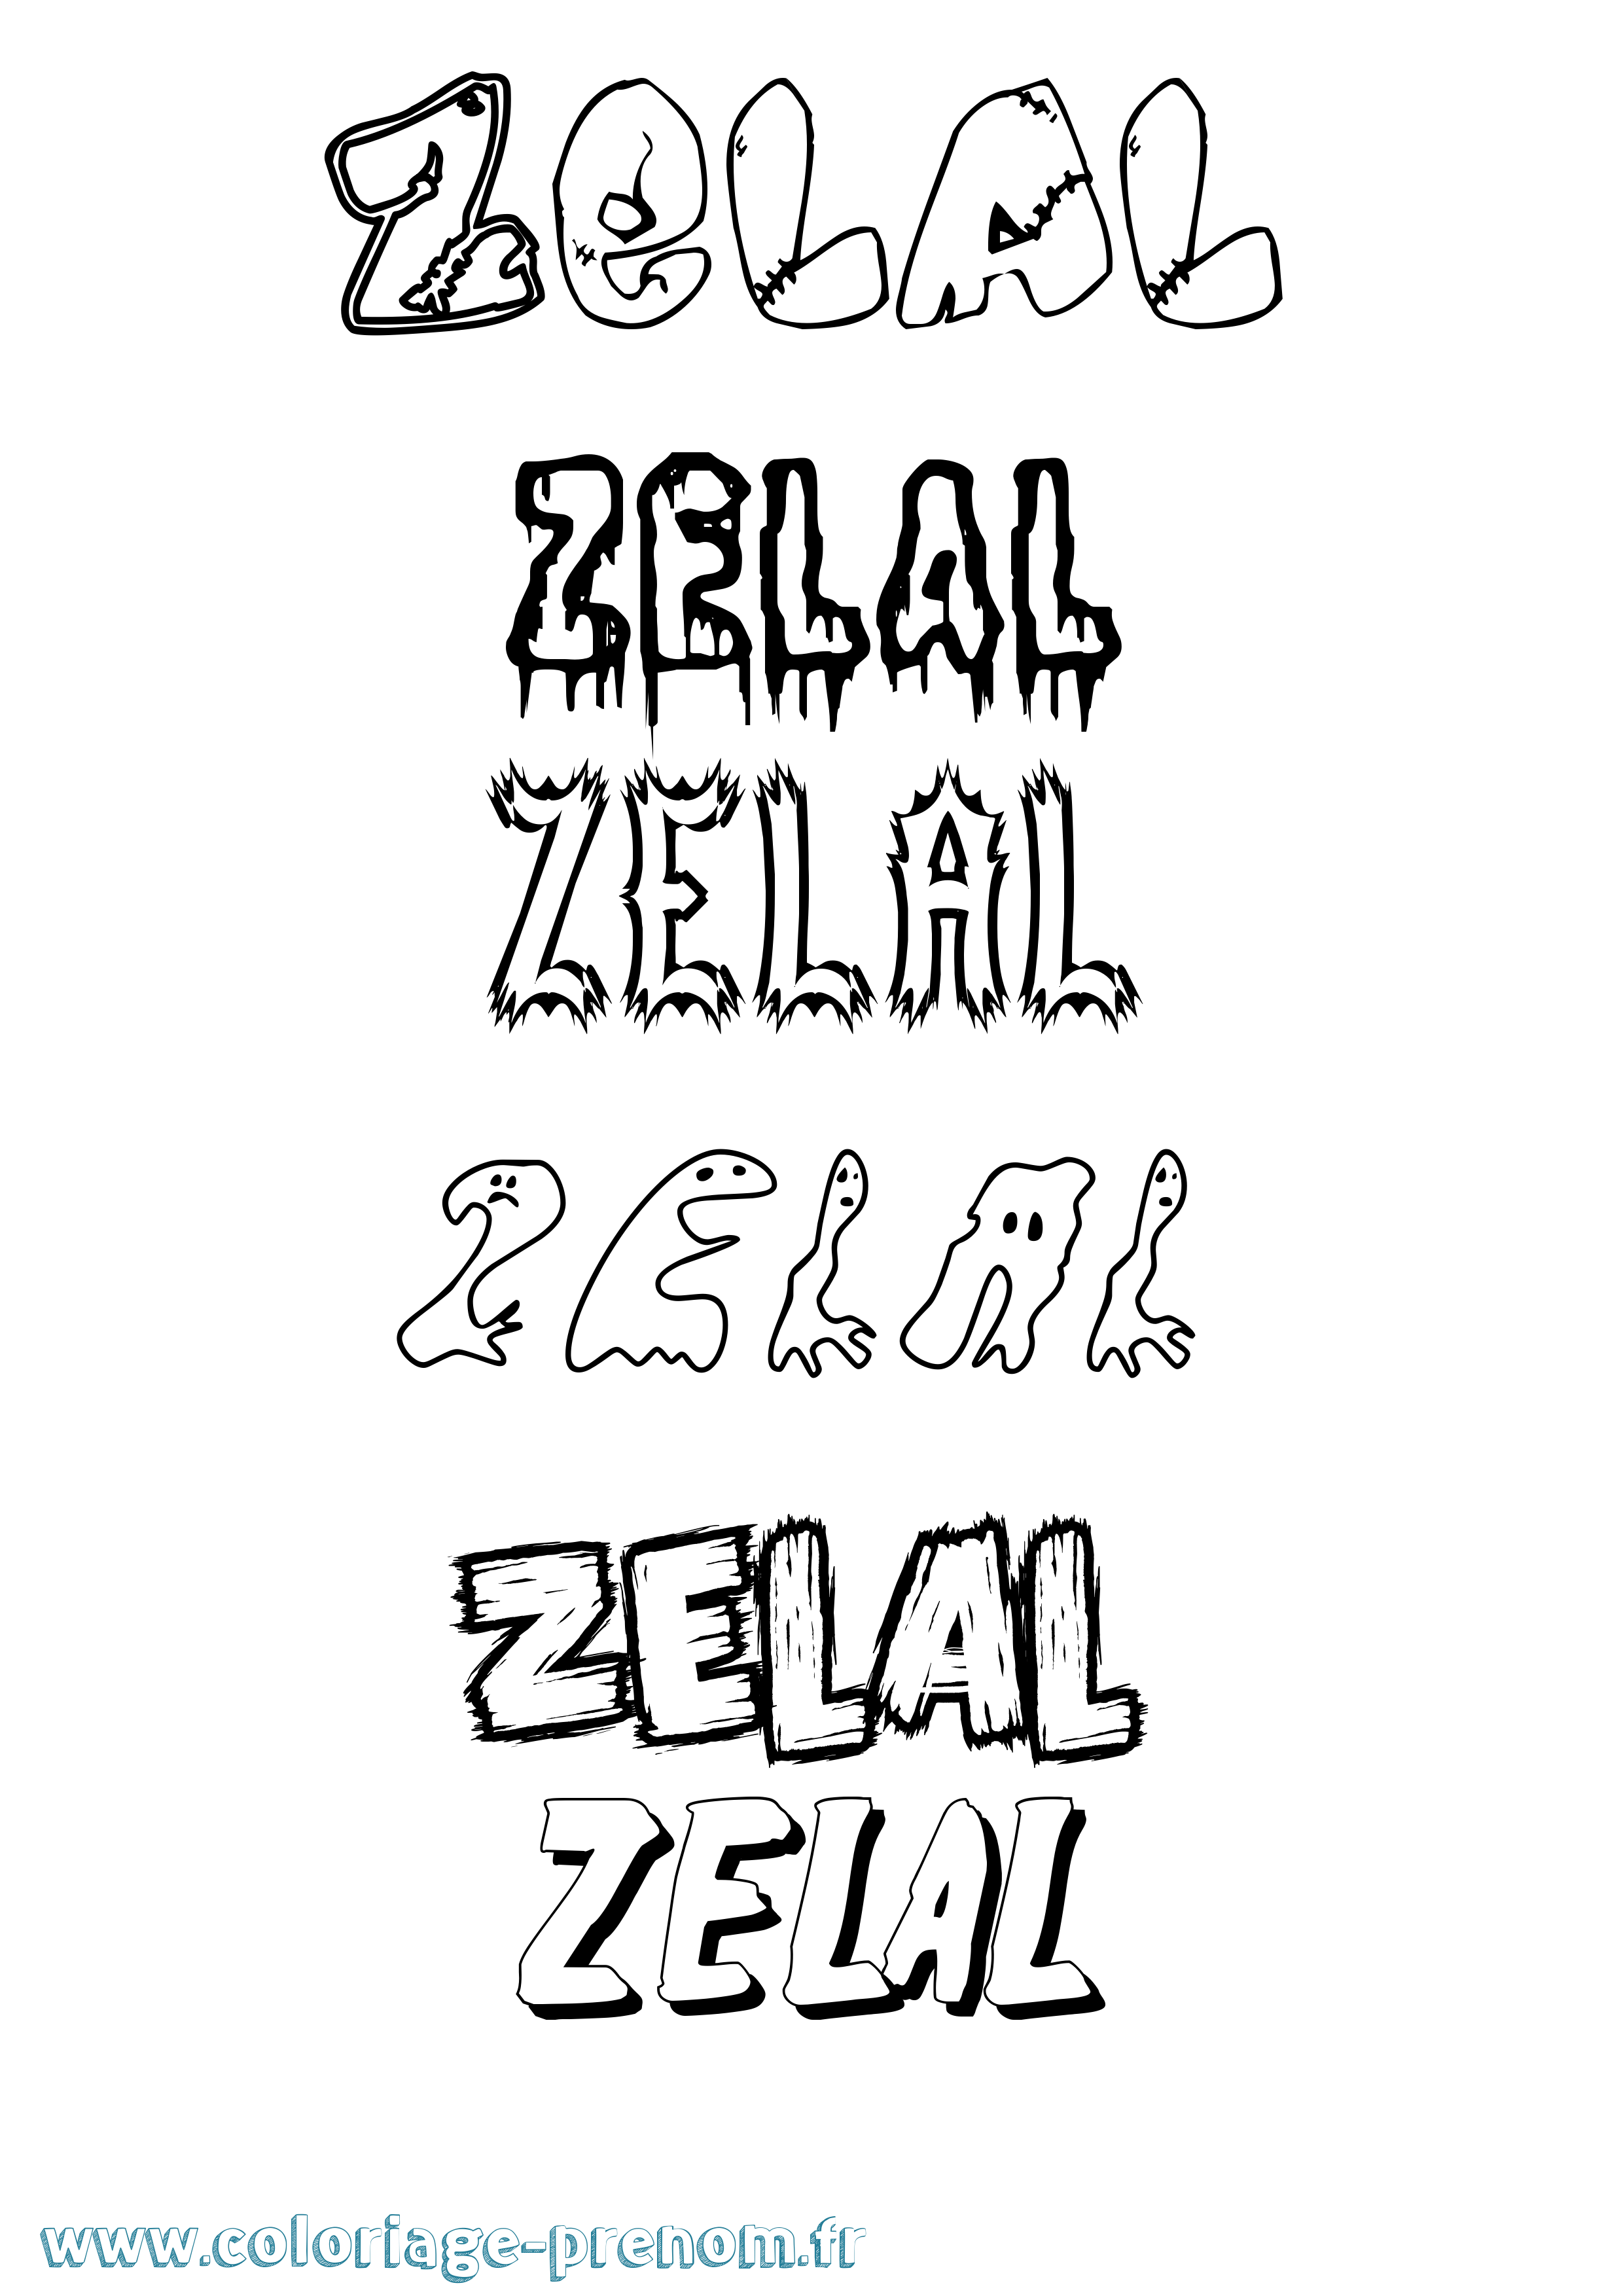 Coloriage prénom Zelal Frisson